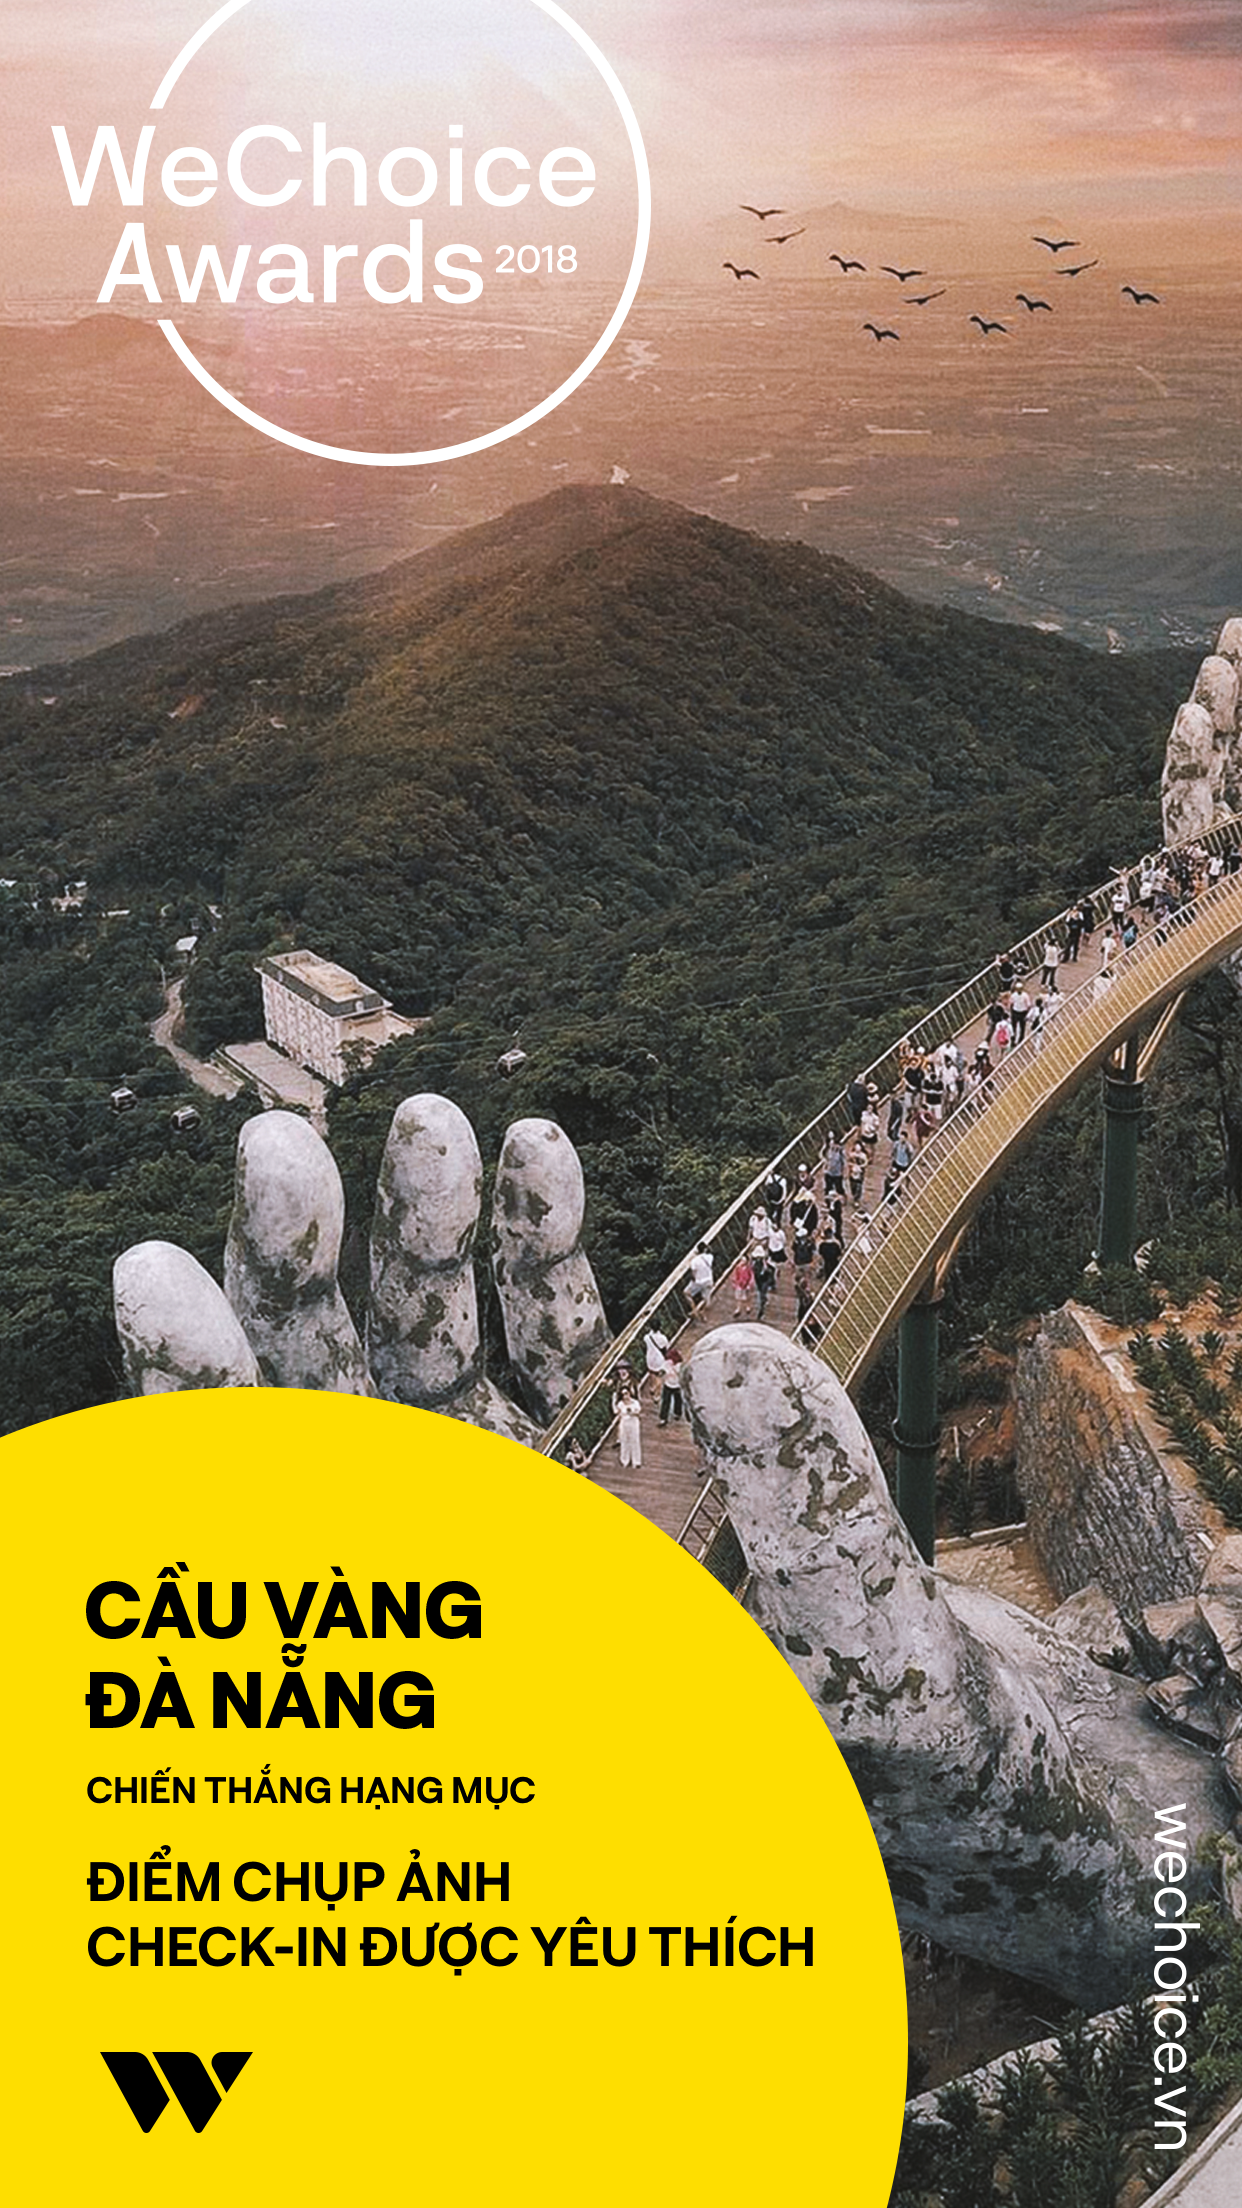 Cầu Vàng Đà Nẵng chính là điểm chụp ảnh check-in được yêu thích nhất 2018 - Ảnh 6.